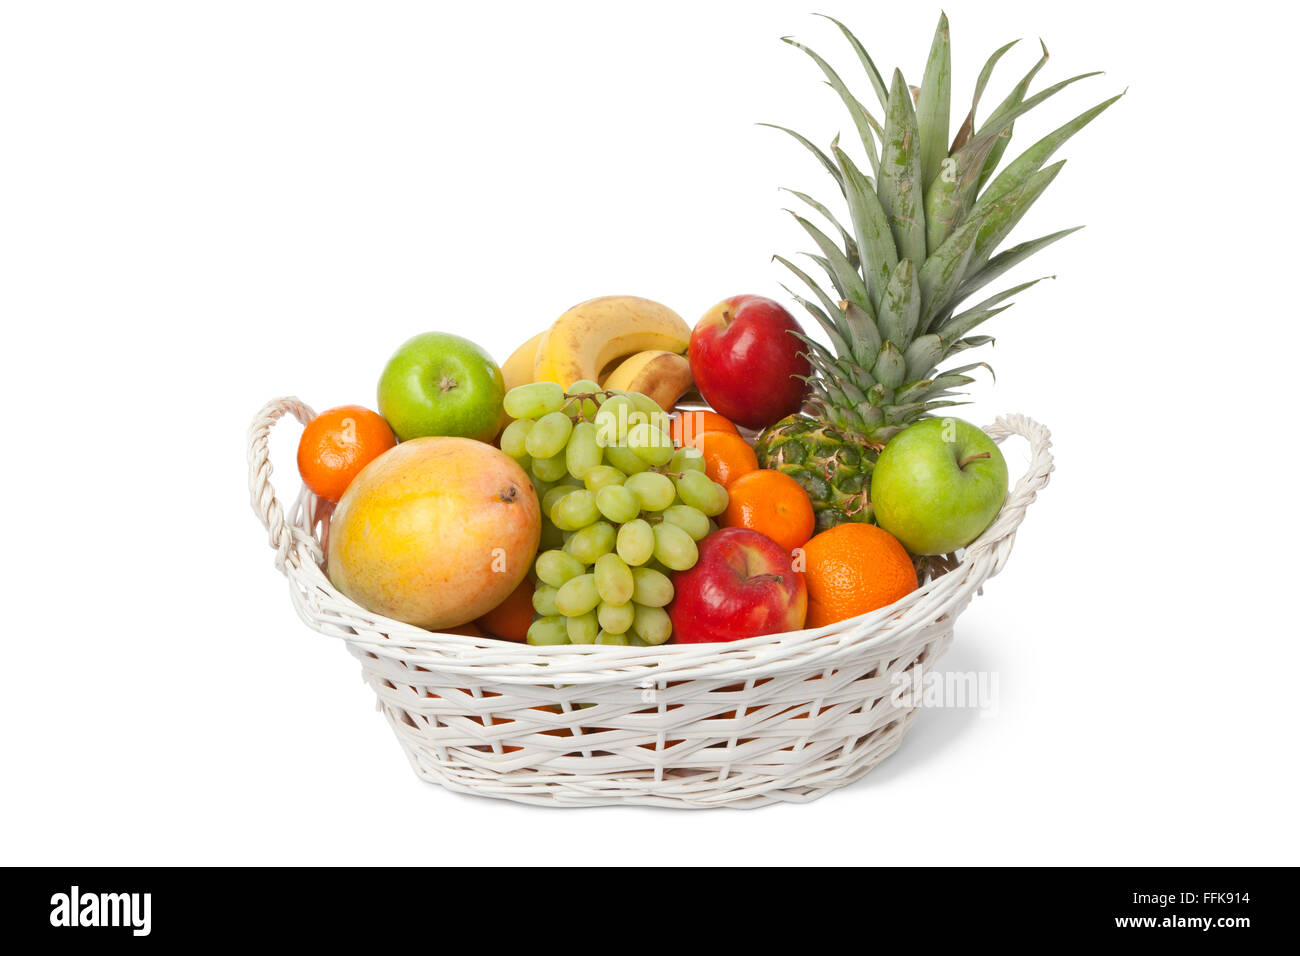 Cesto di frutta immagini e fotografie stock ad alta risoluzione - Alamy